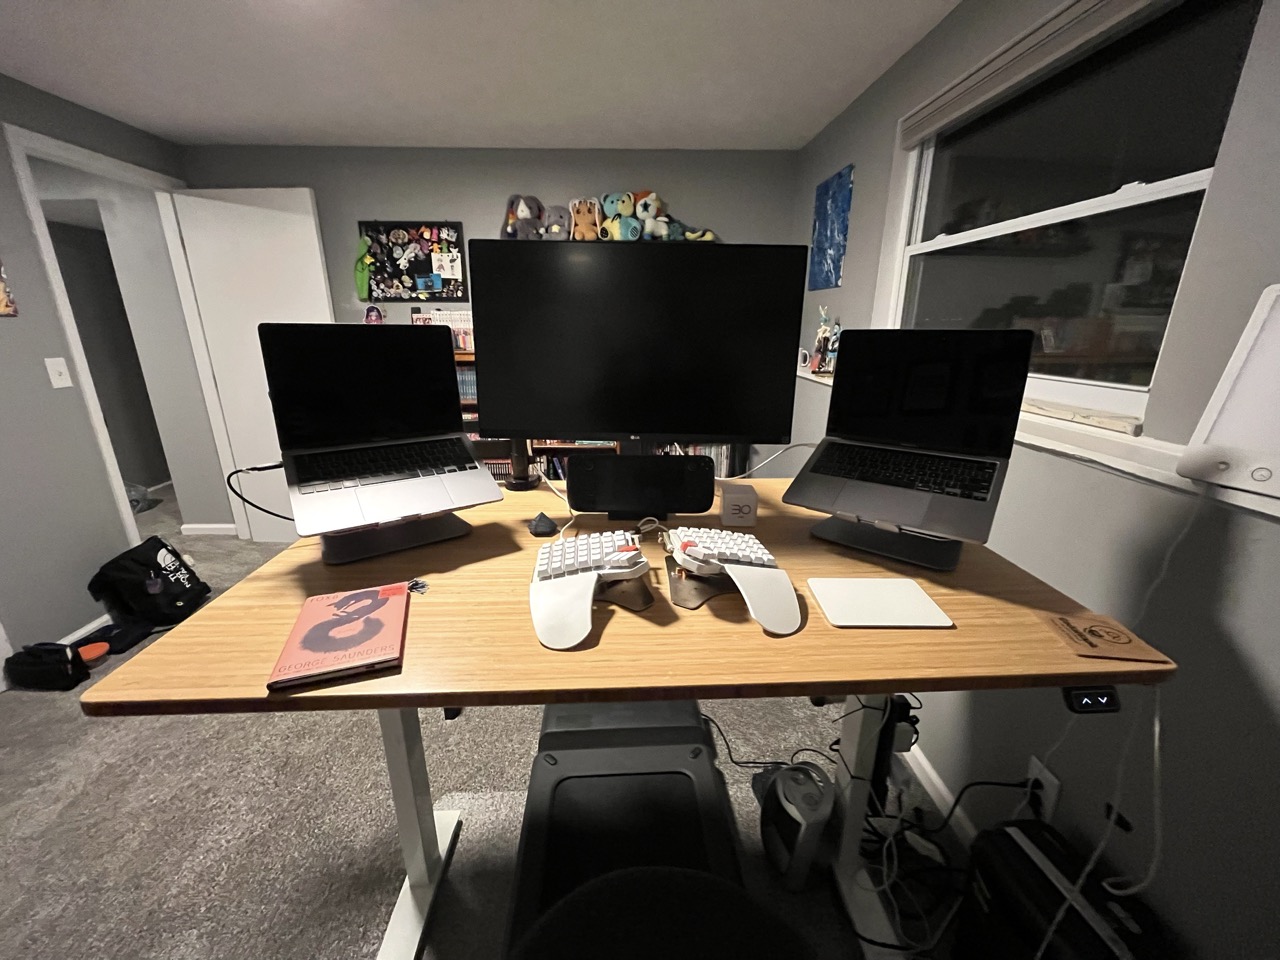 Joe's desk set up